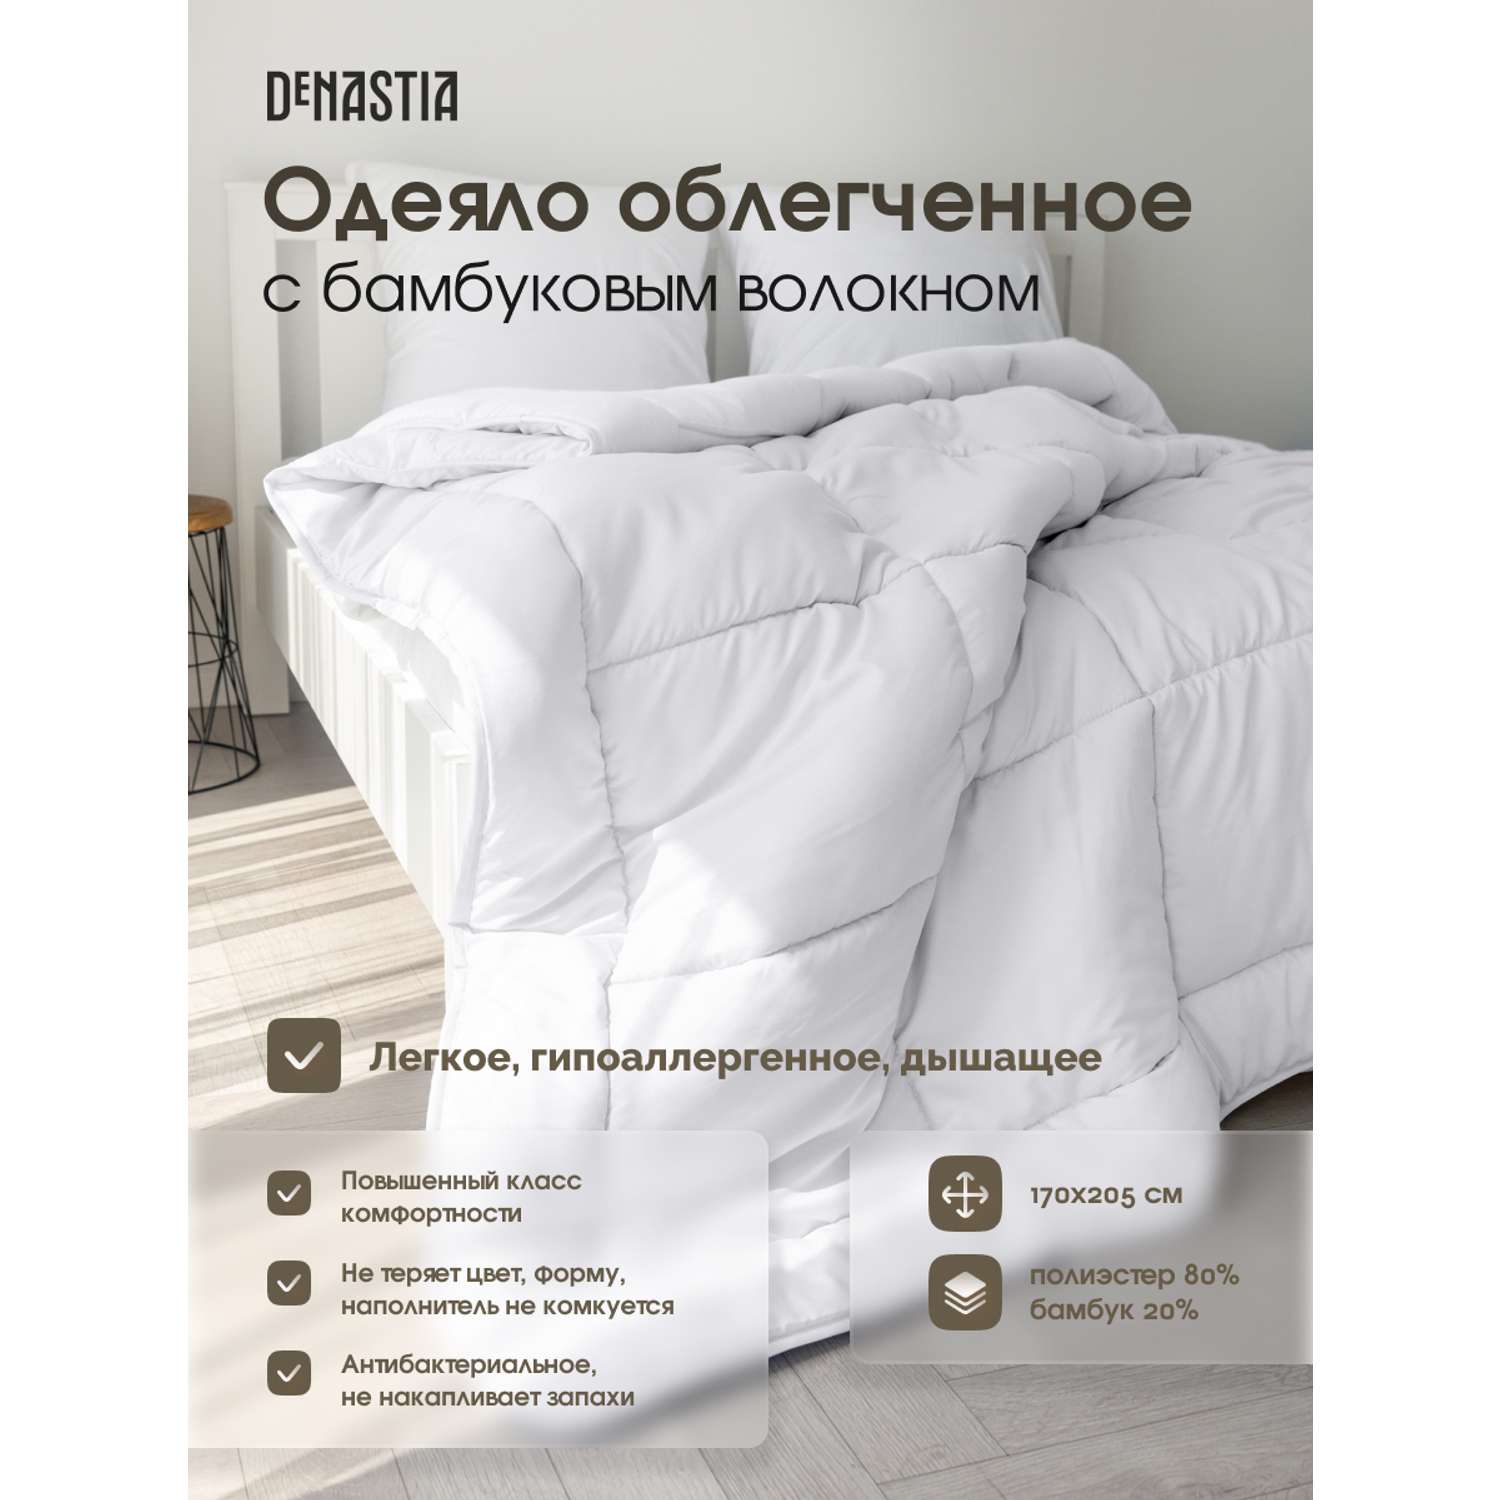 Одеяло облегченное DeNASTIA с бамбуковым волокном 170x205 см белый R020002 - фото 2